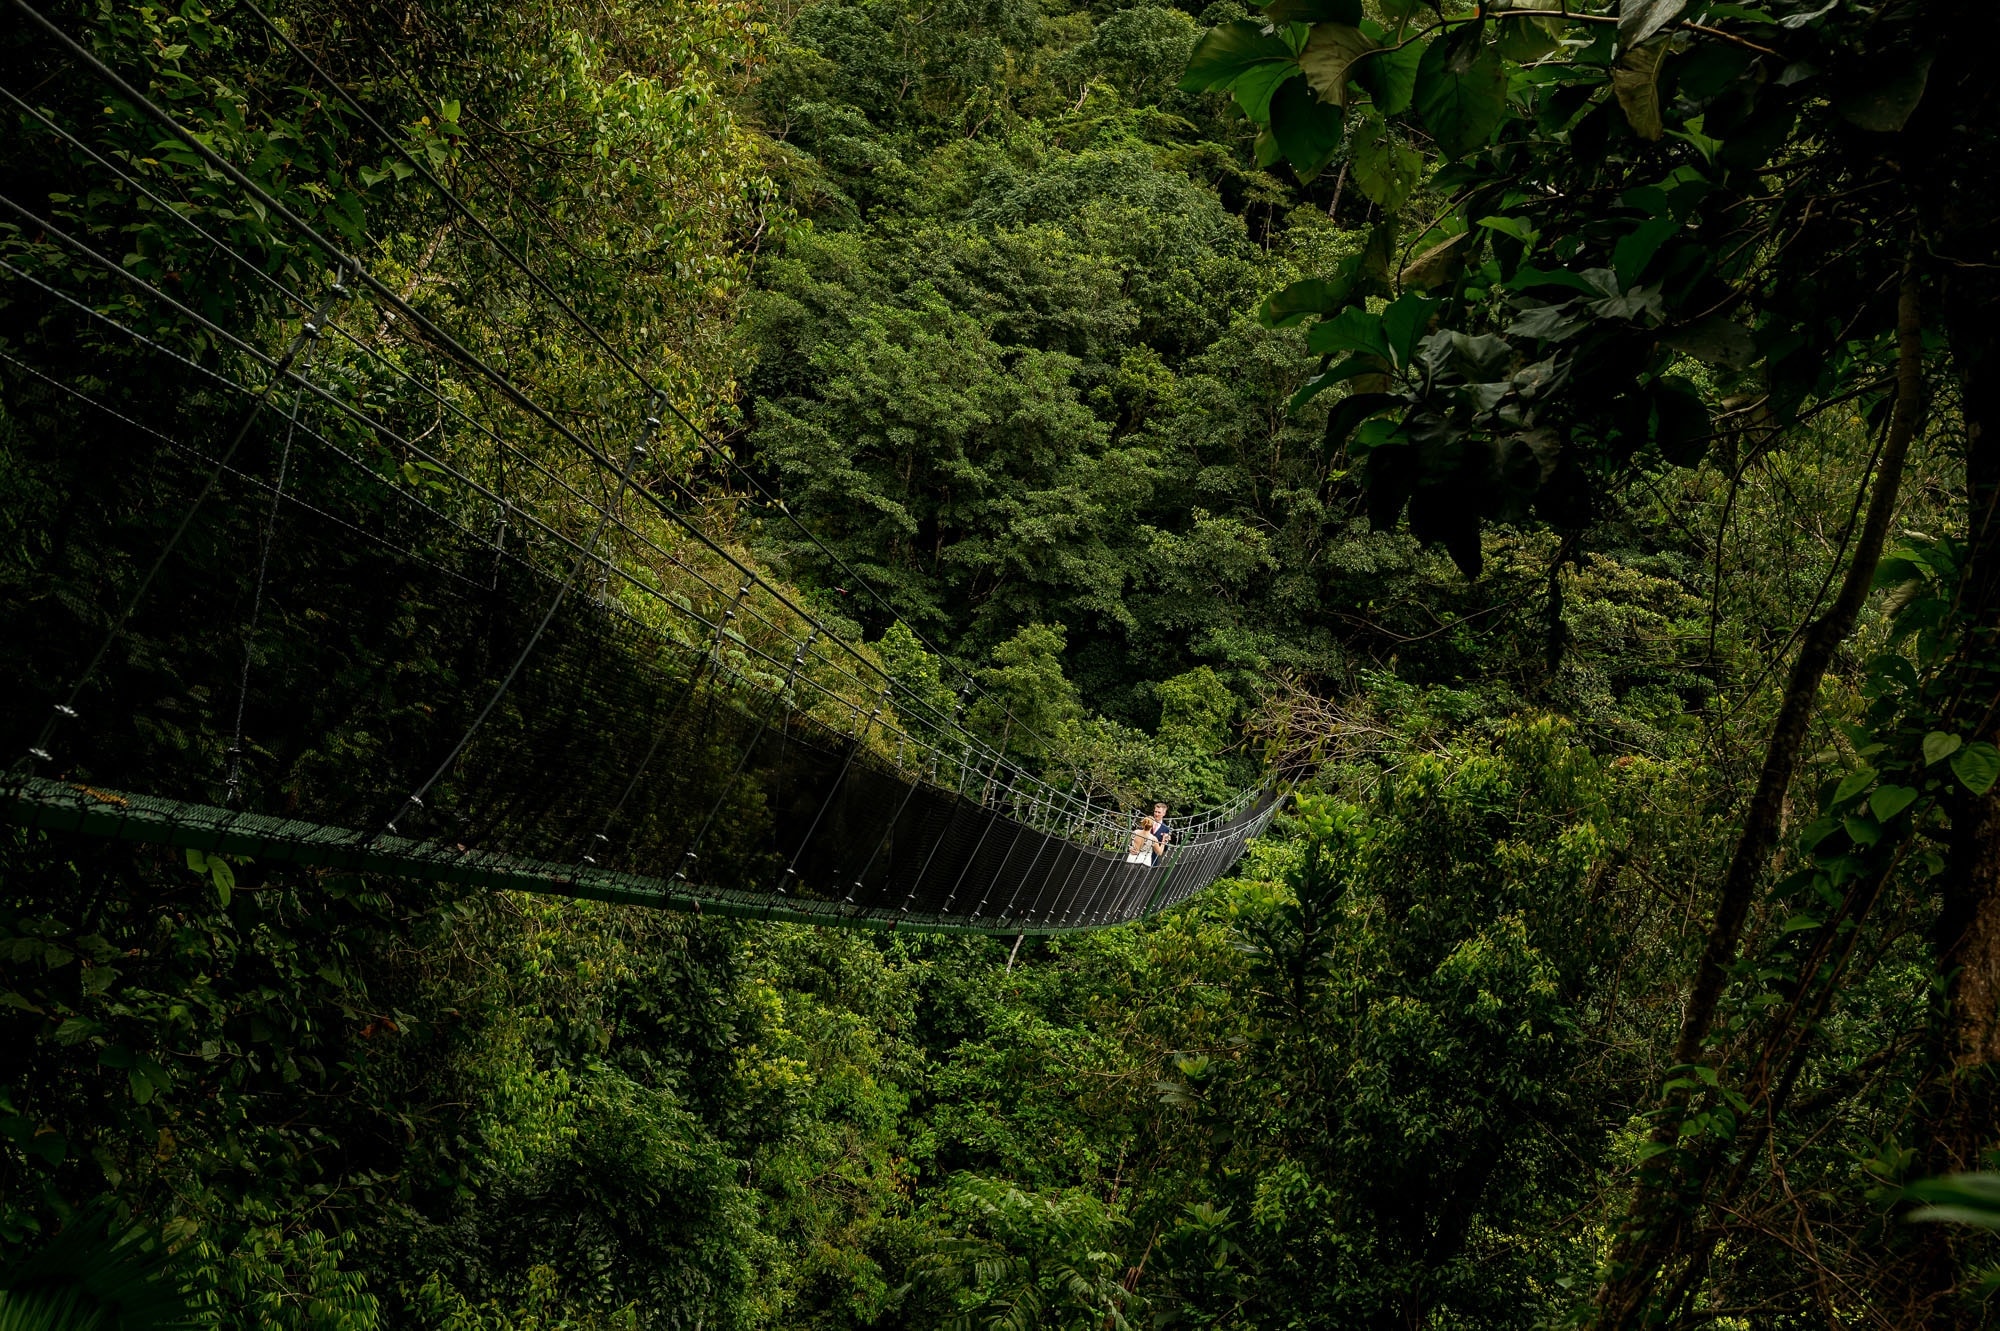 Off the beaten path in Costa Rica on a suspension bridge